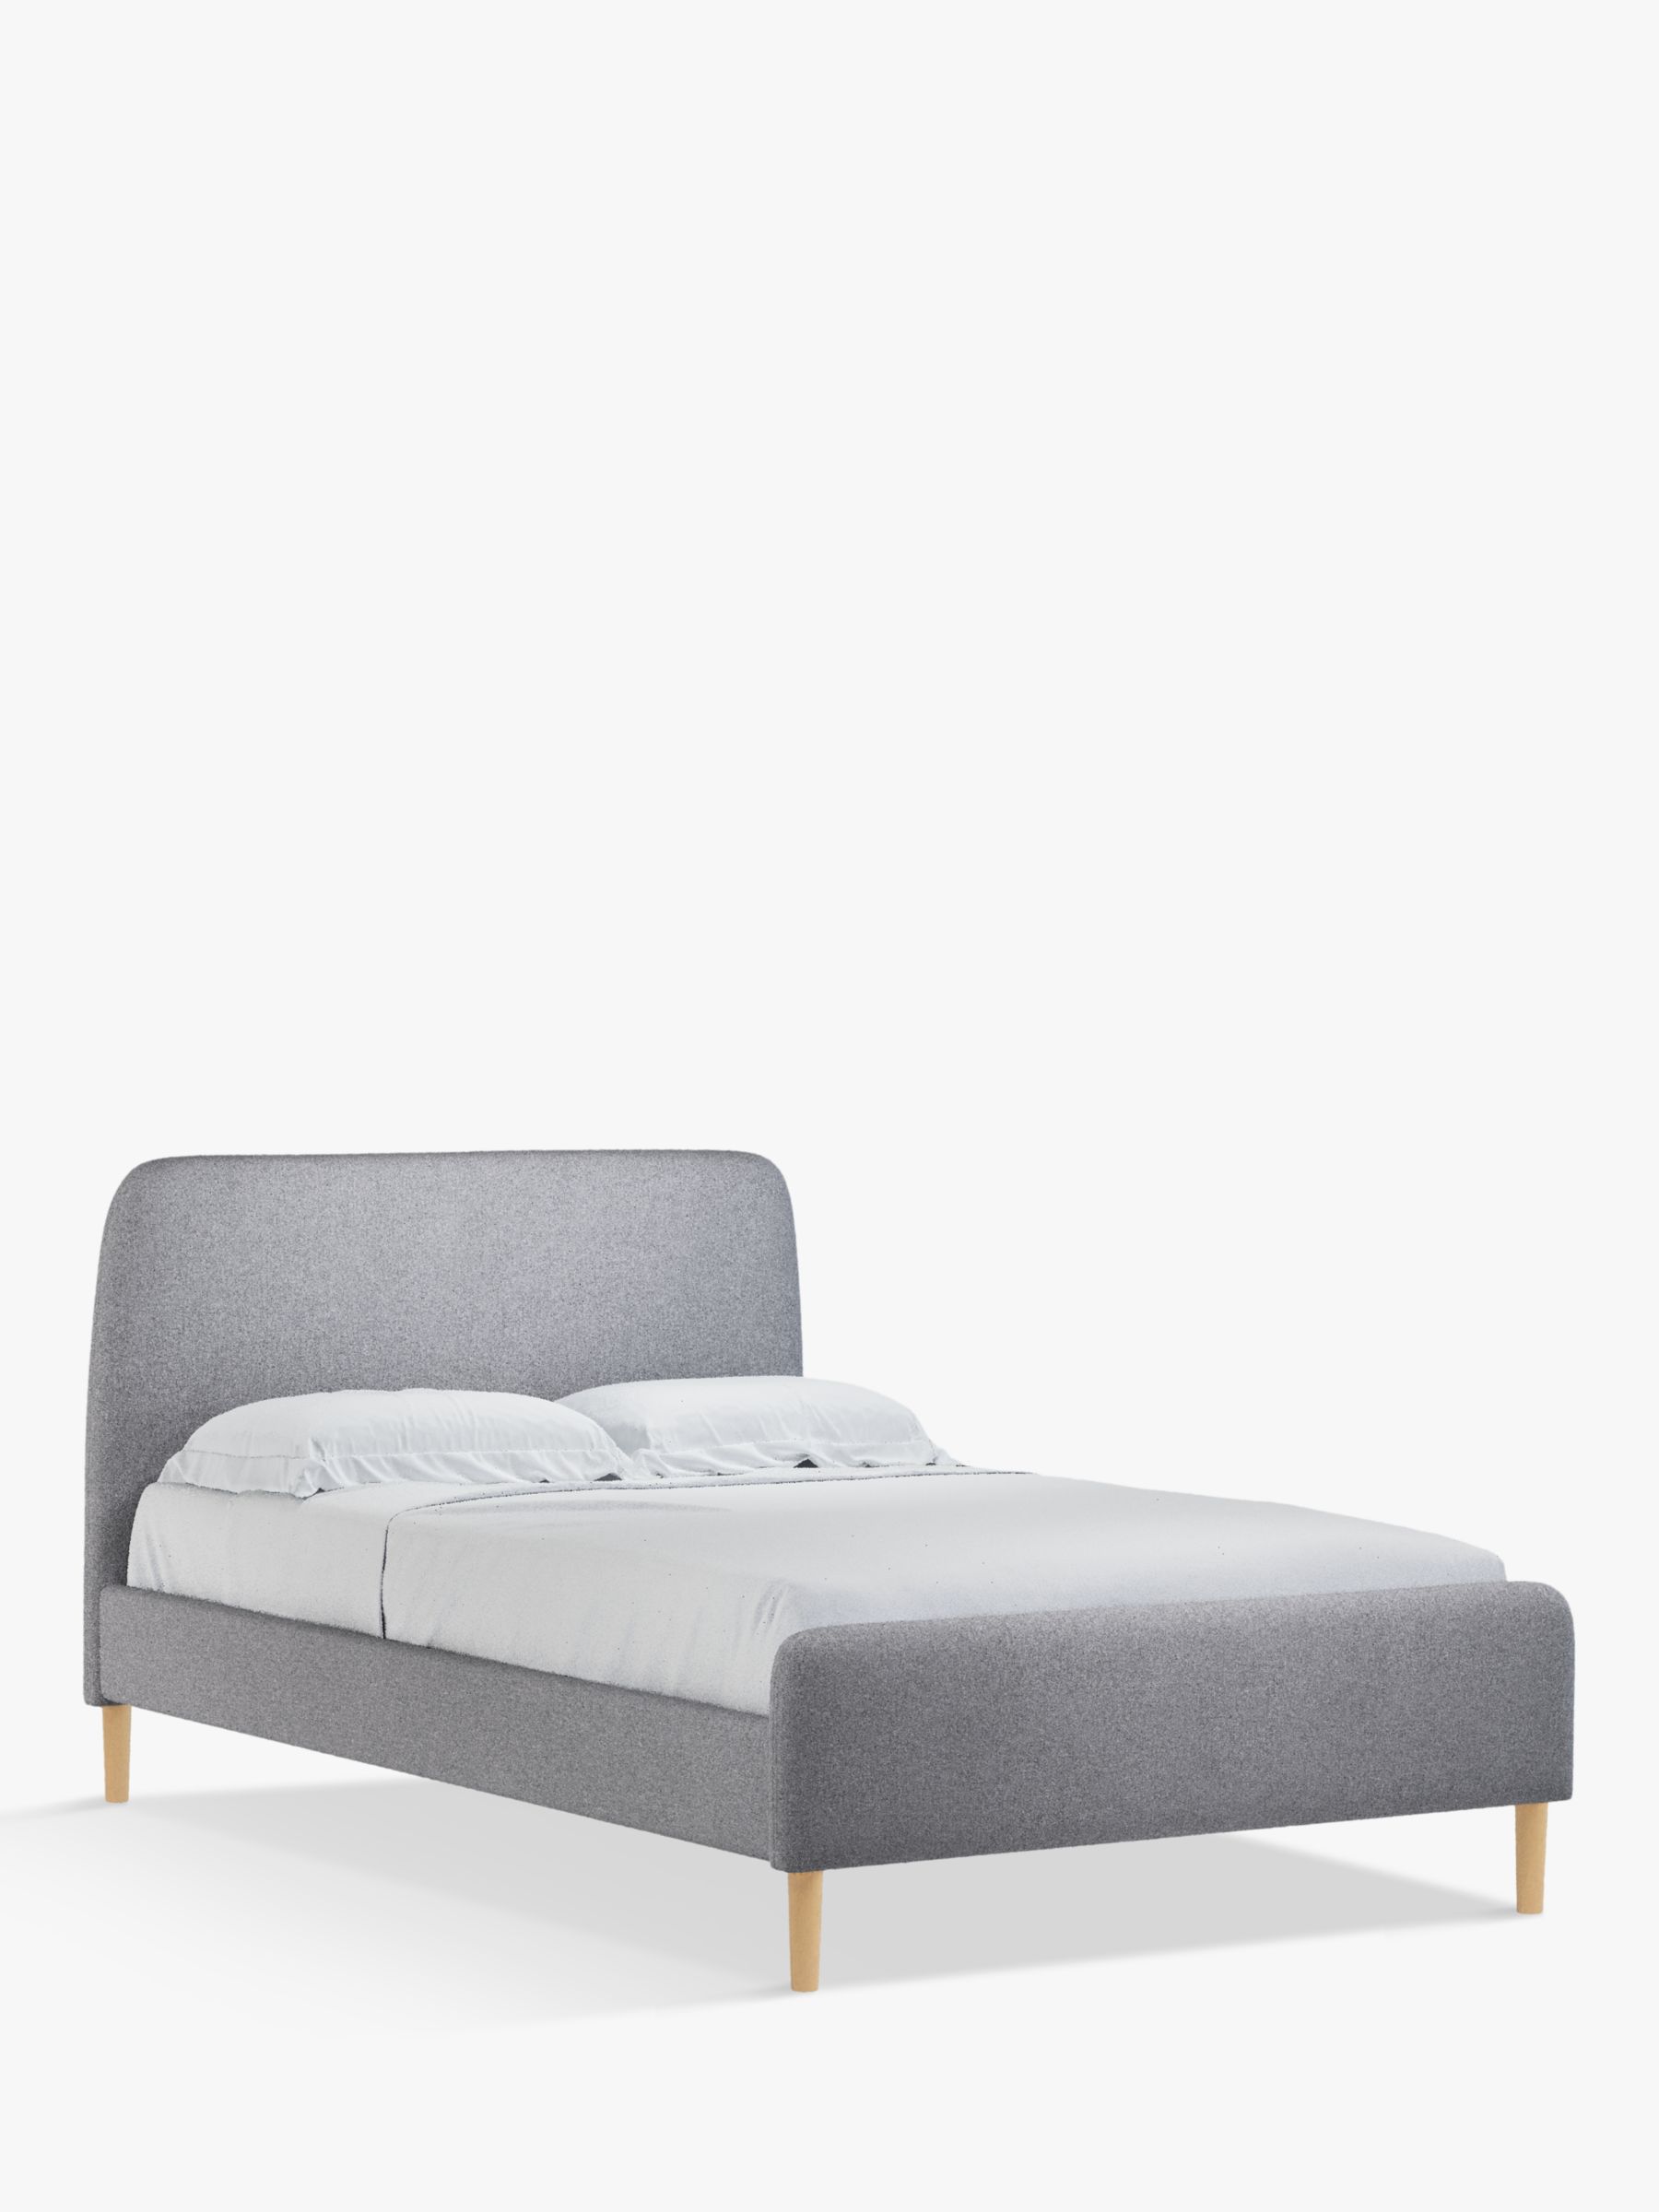 Partners Bonn Upholstered Bed Frame, Small Full Bed Frame